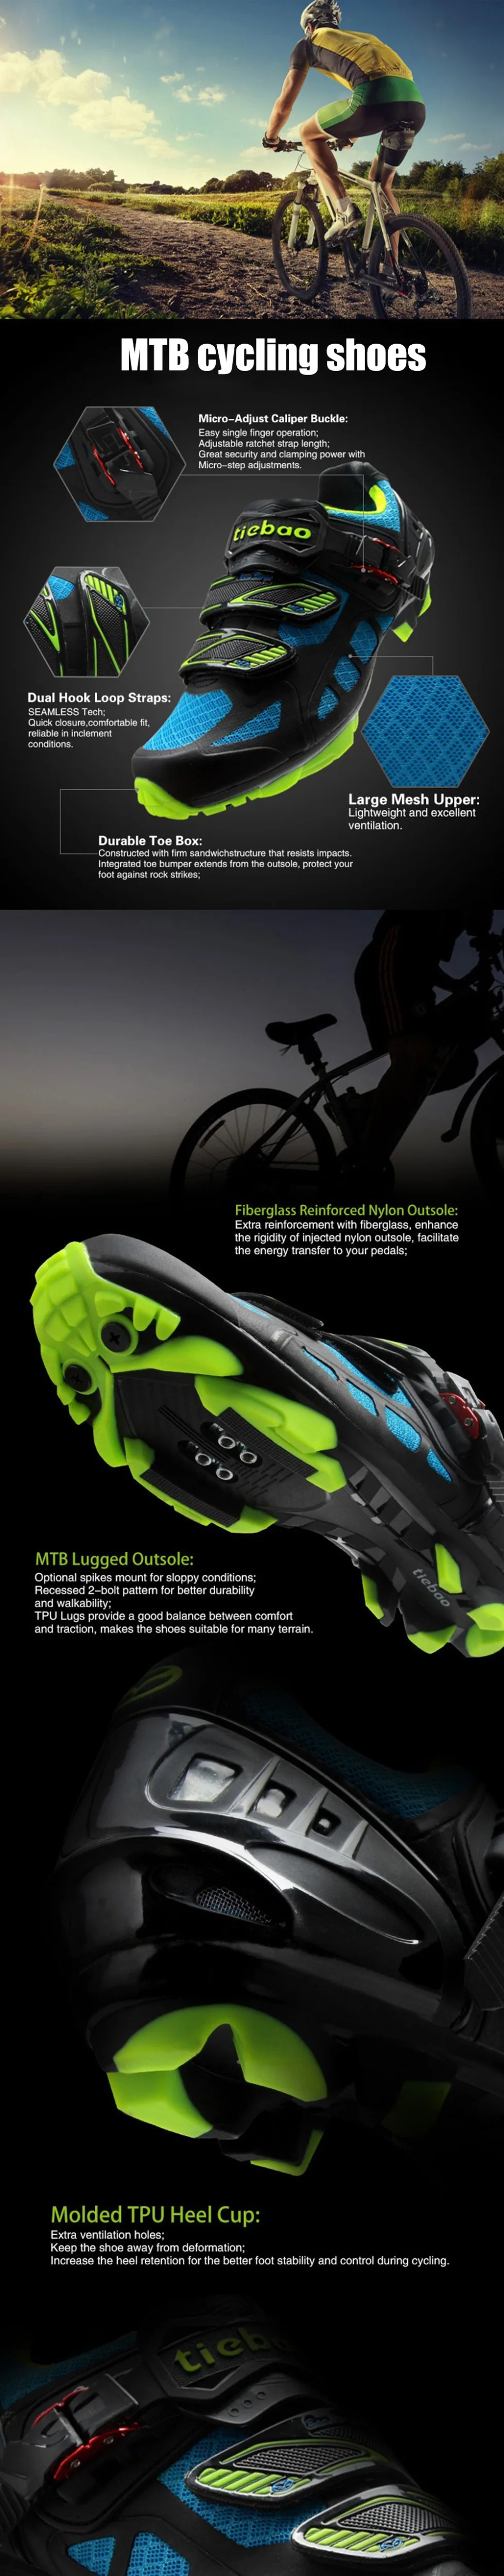 Tiebao Sapatilha Ciclismo MTB велосипедная обувь, мужские Spd педали, набор профессиональных велосипедных самоблокирующихся кроссовок, дышащие велосипедные кроссовки